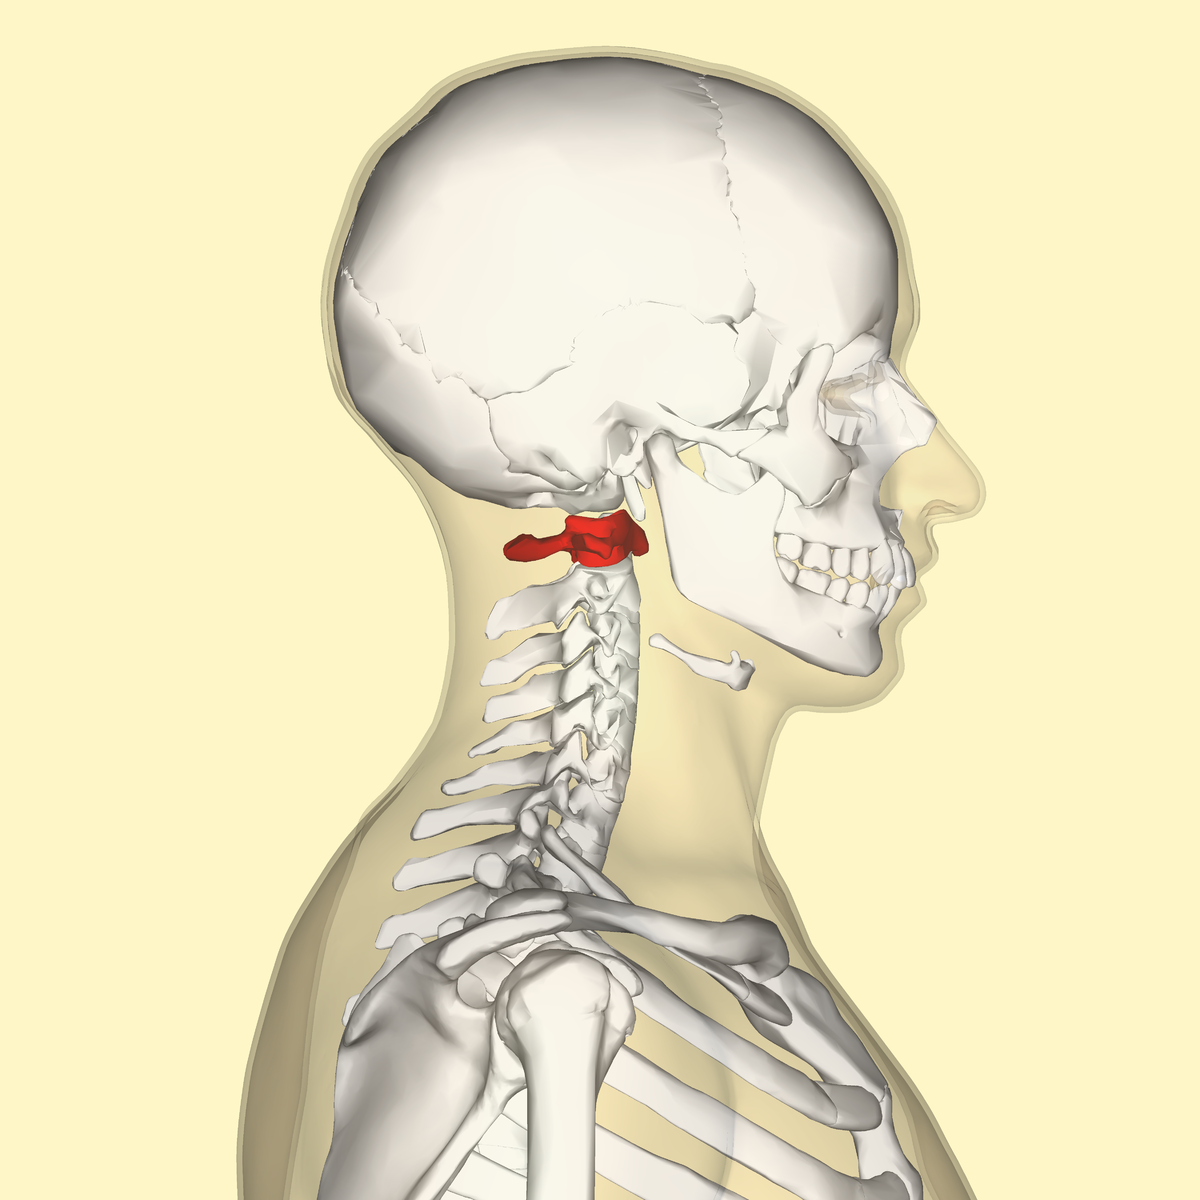 Mit jelent a nyaki gerinc eredetű fejfájás?